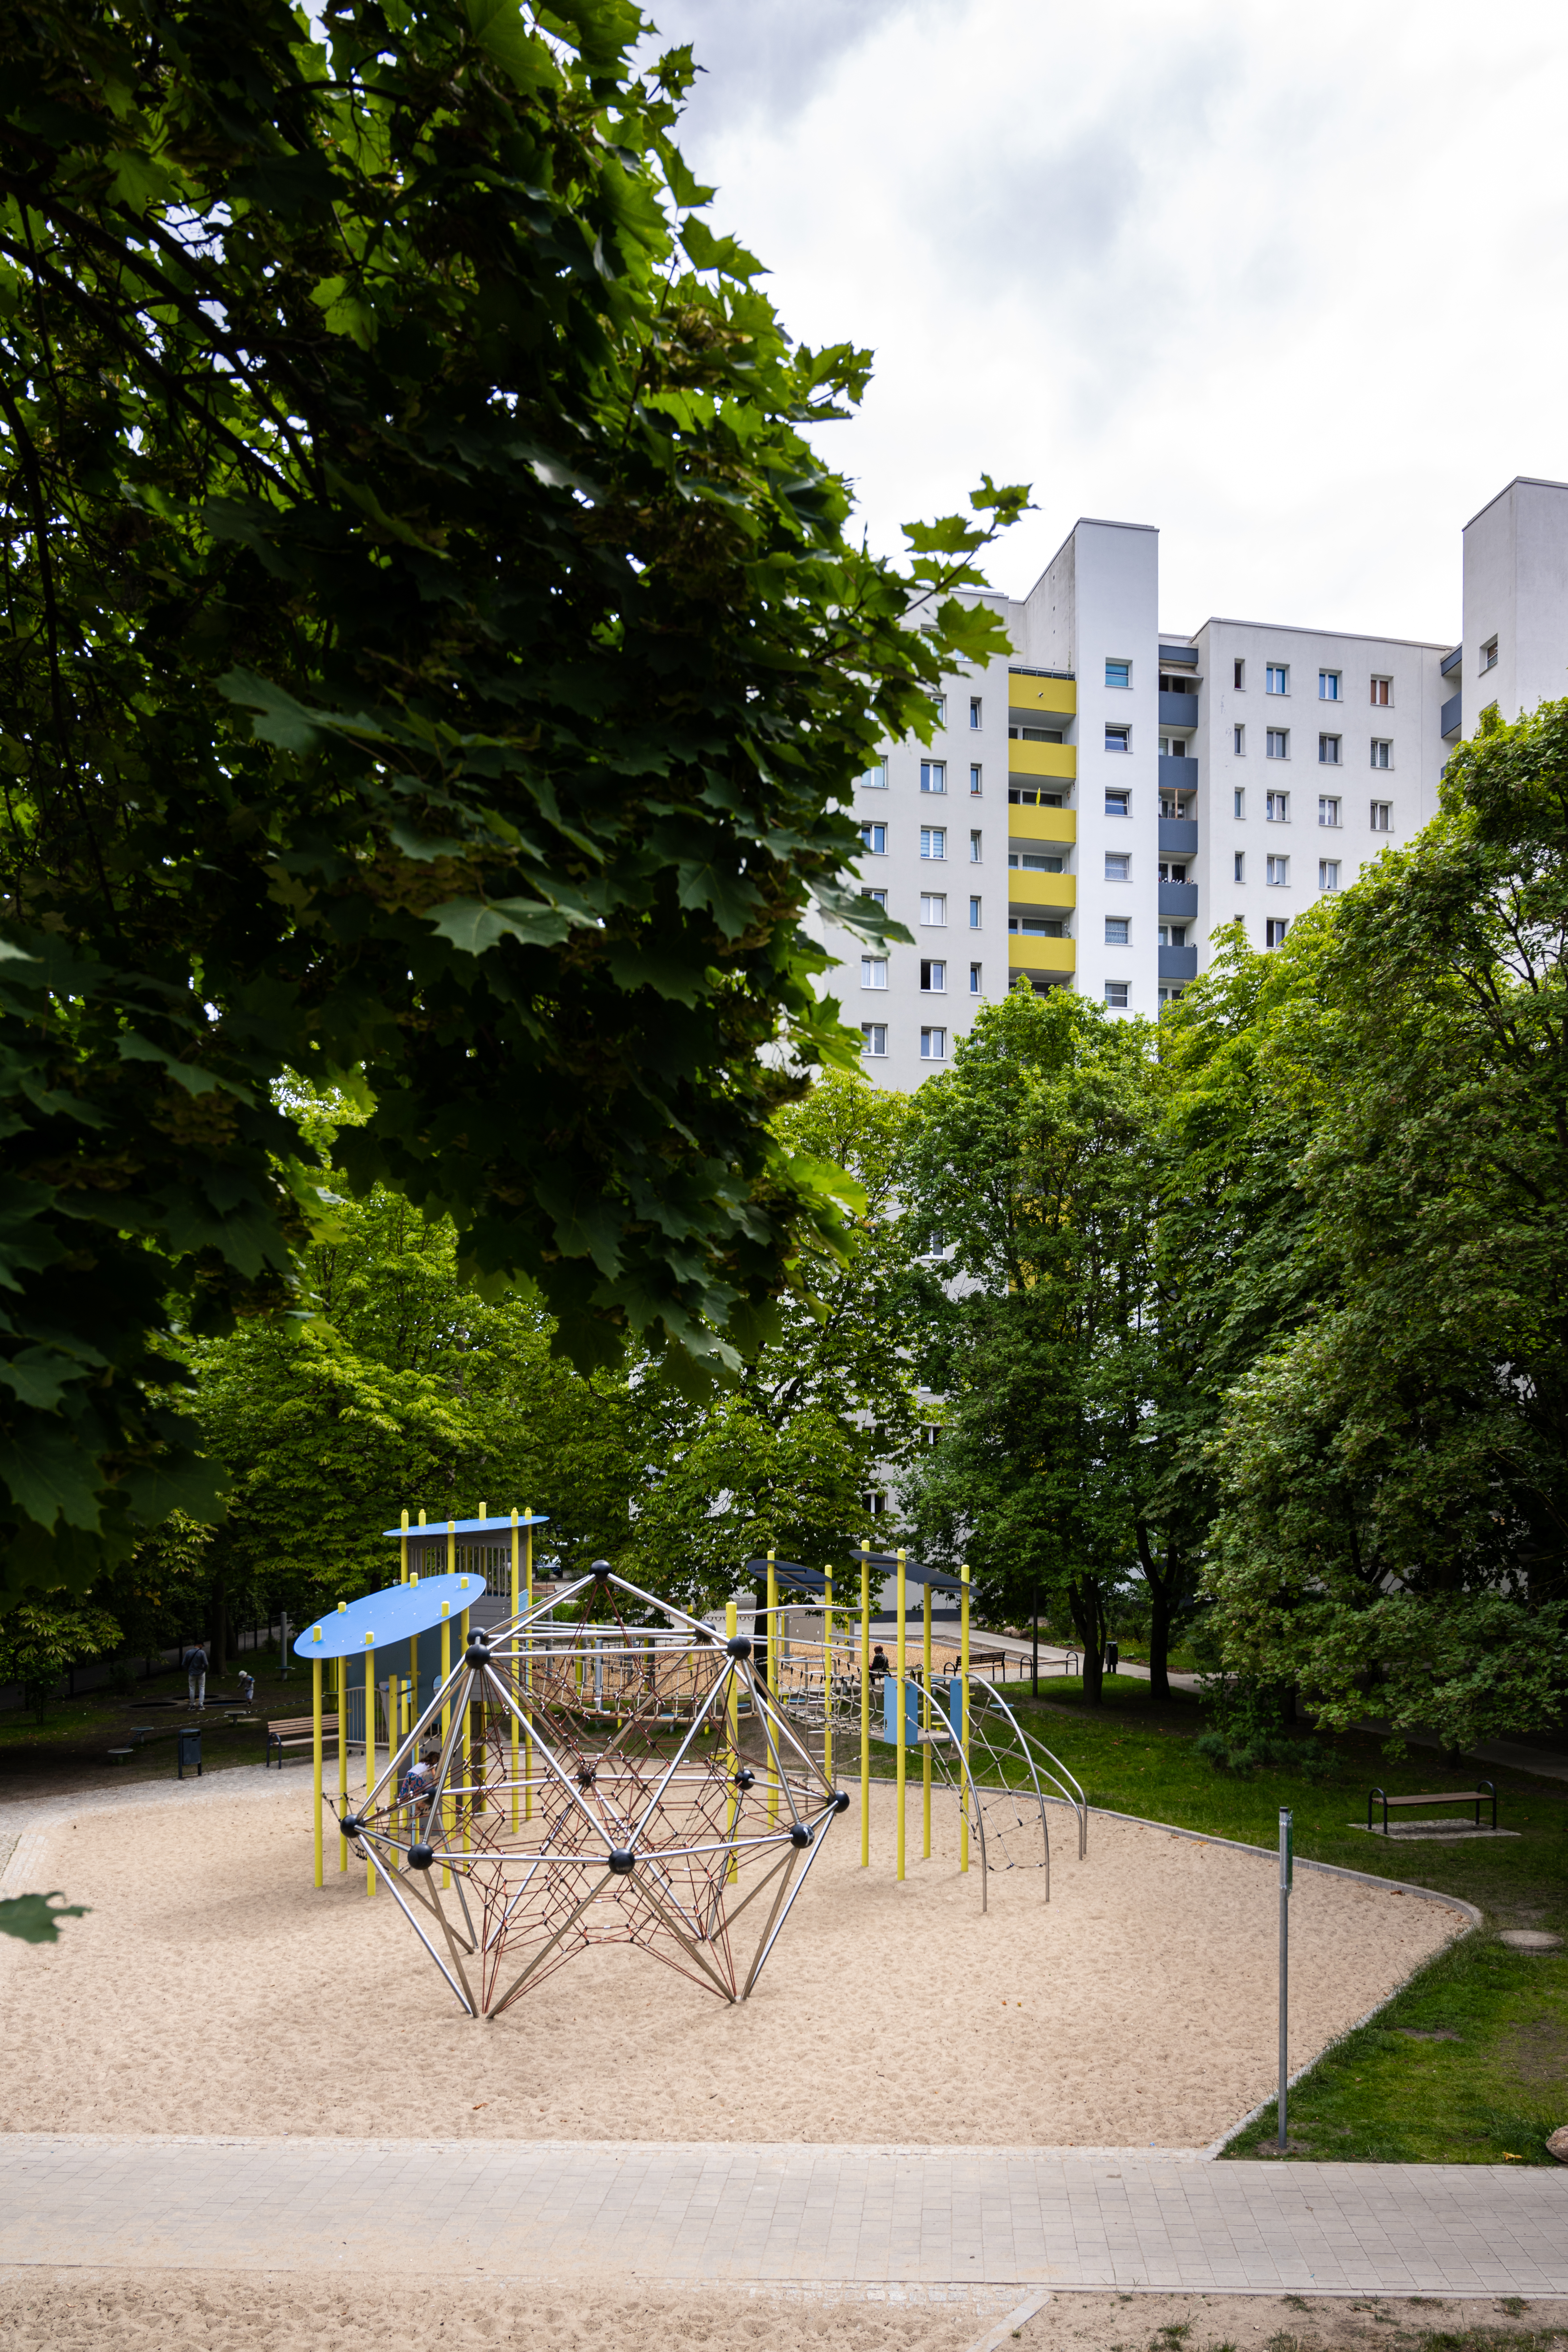 Außenaufnahme zeigt neuen Spielplatz am Eichhorster Weg, umgeben von Bäumen und Grünflächen. Im Hintergrund Wohnhaus.